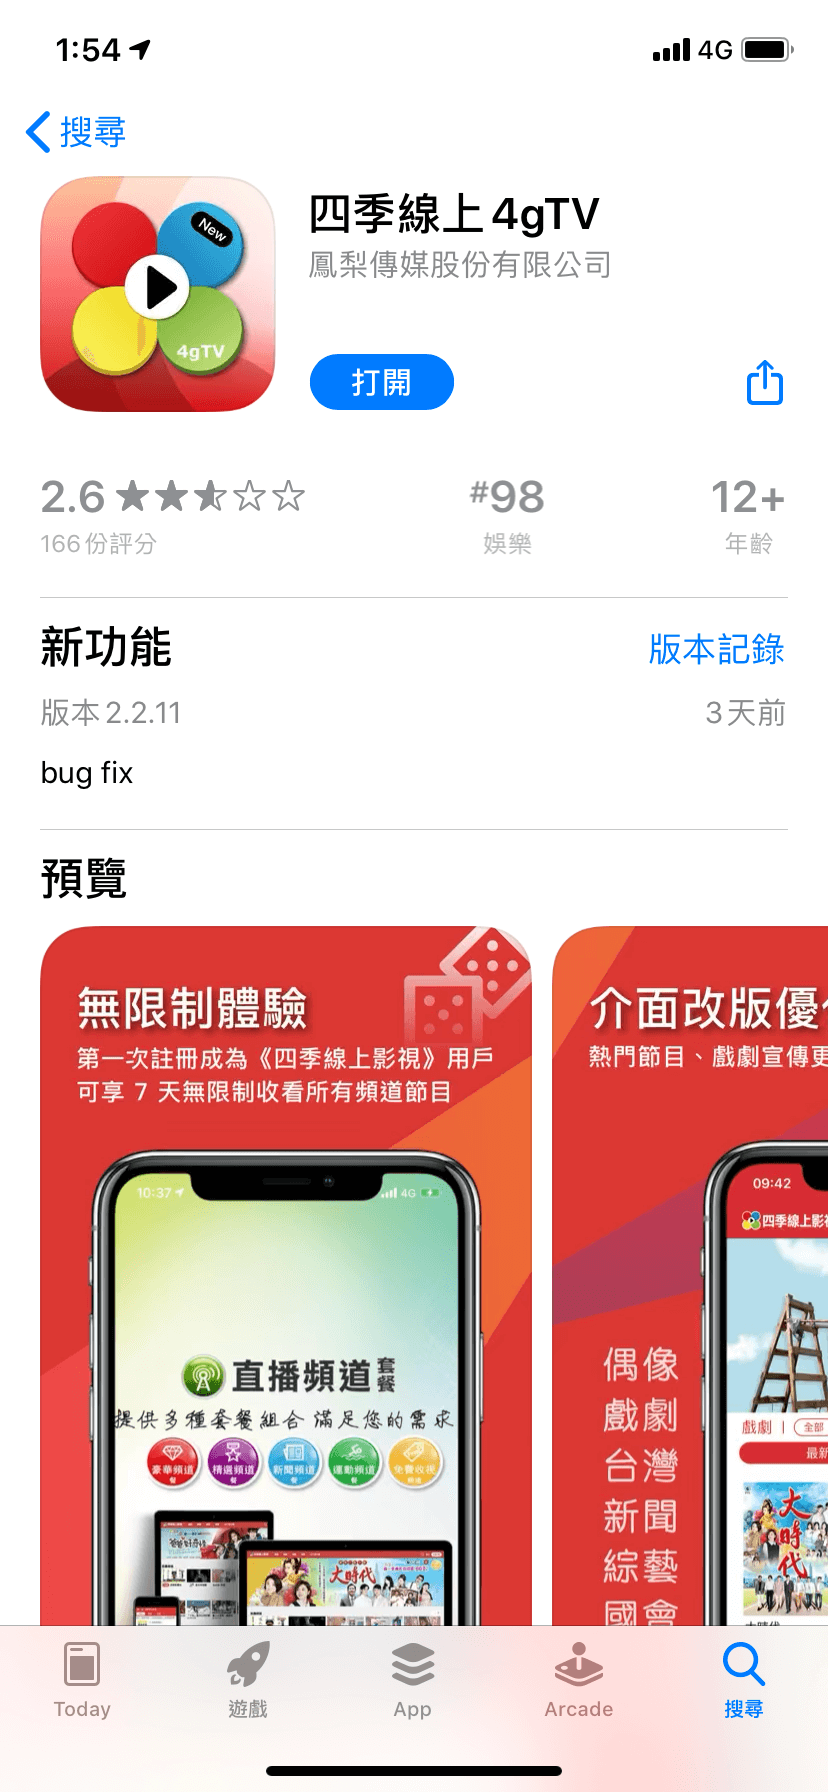 安裝「四季線上4gTV」App